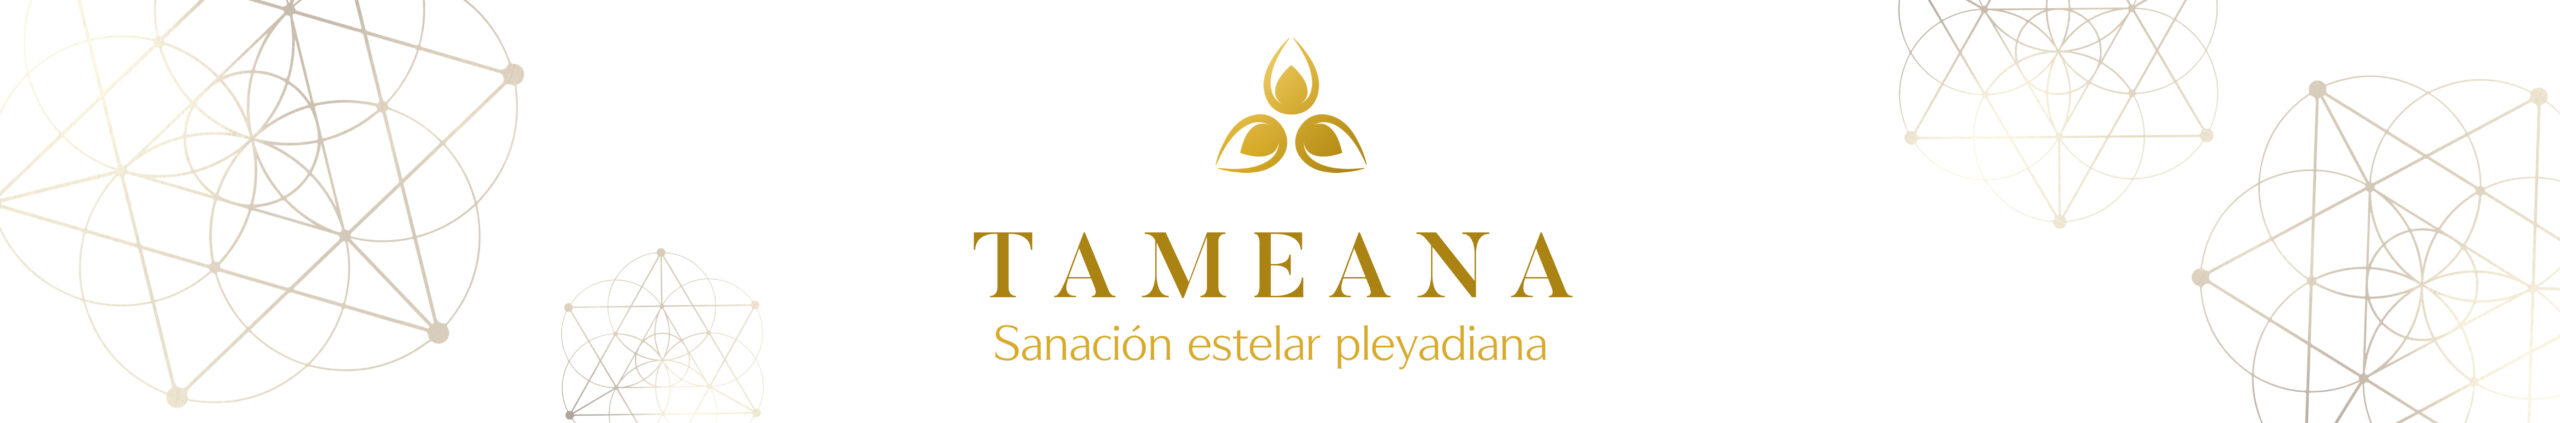 Curso de Tameana en Madrid